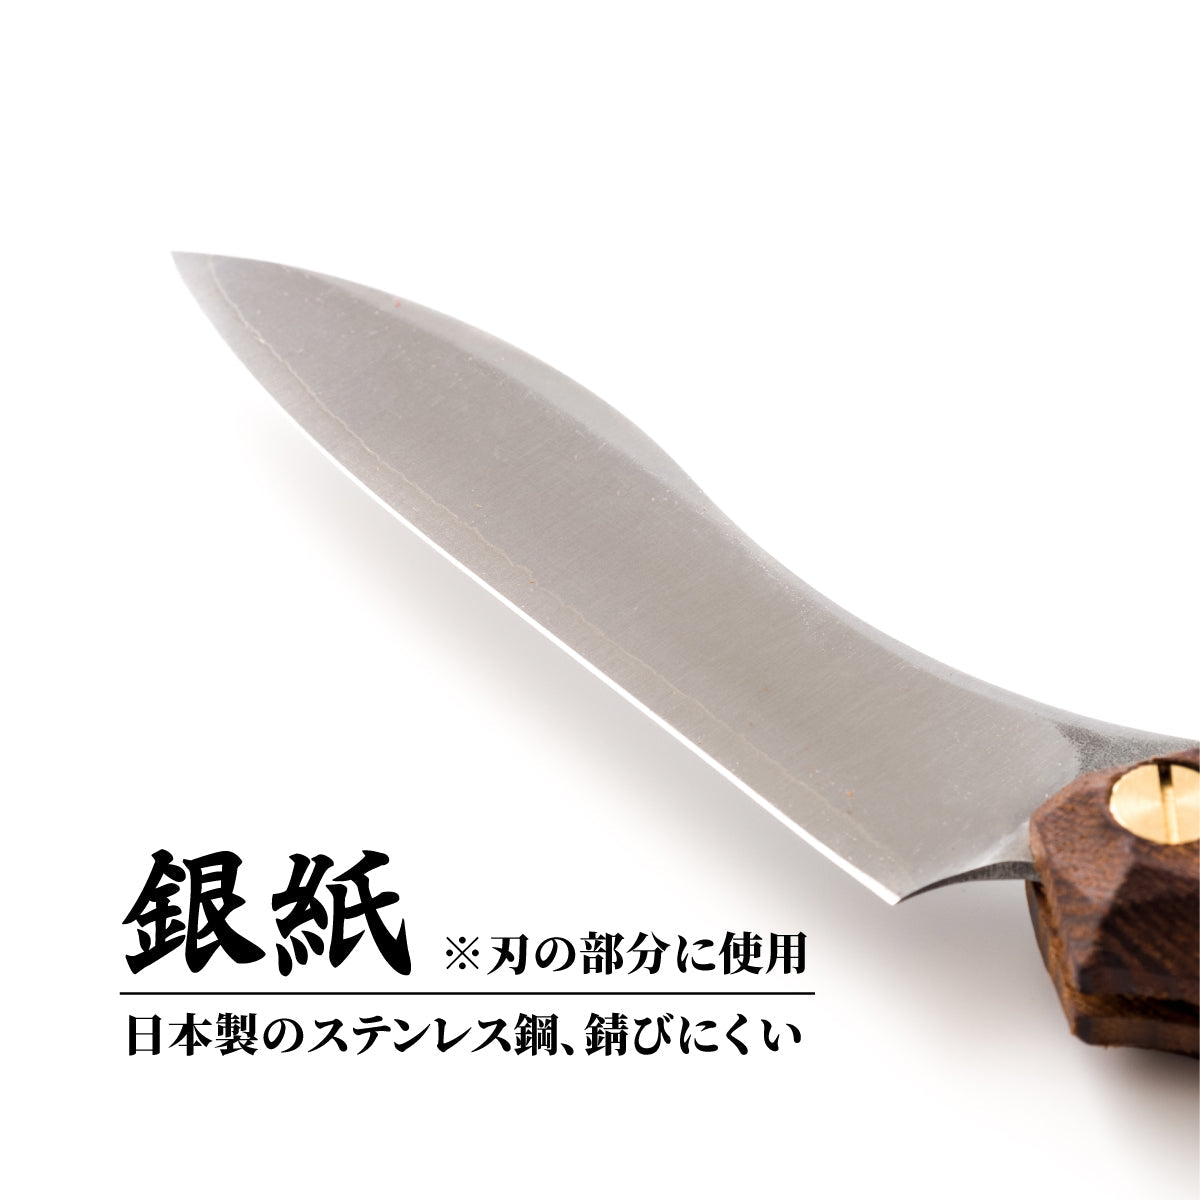 折畳式料理ナイフ マルチカラー (ステンレス鋼/銀紙三号) 9,900円